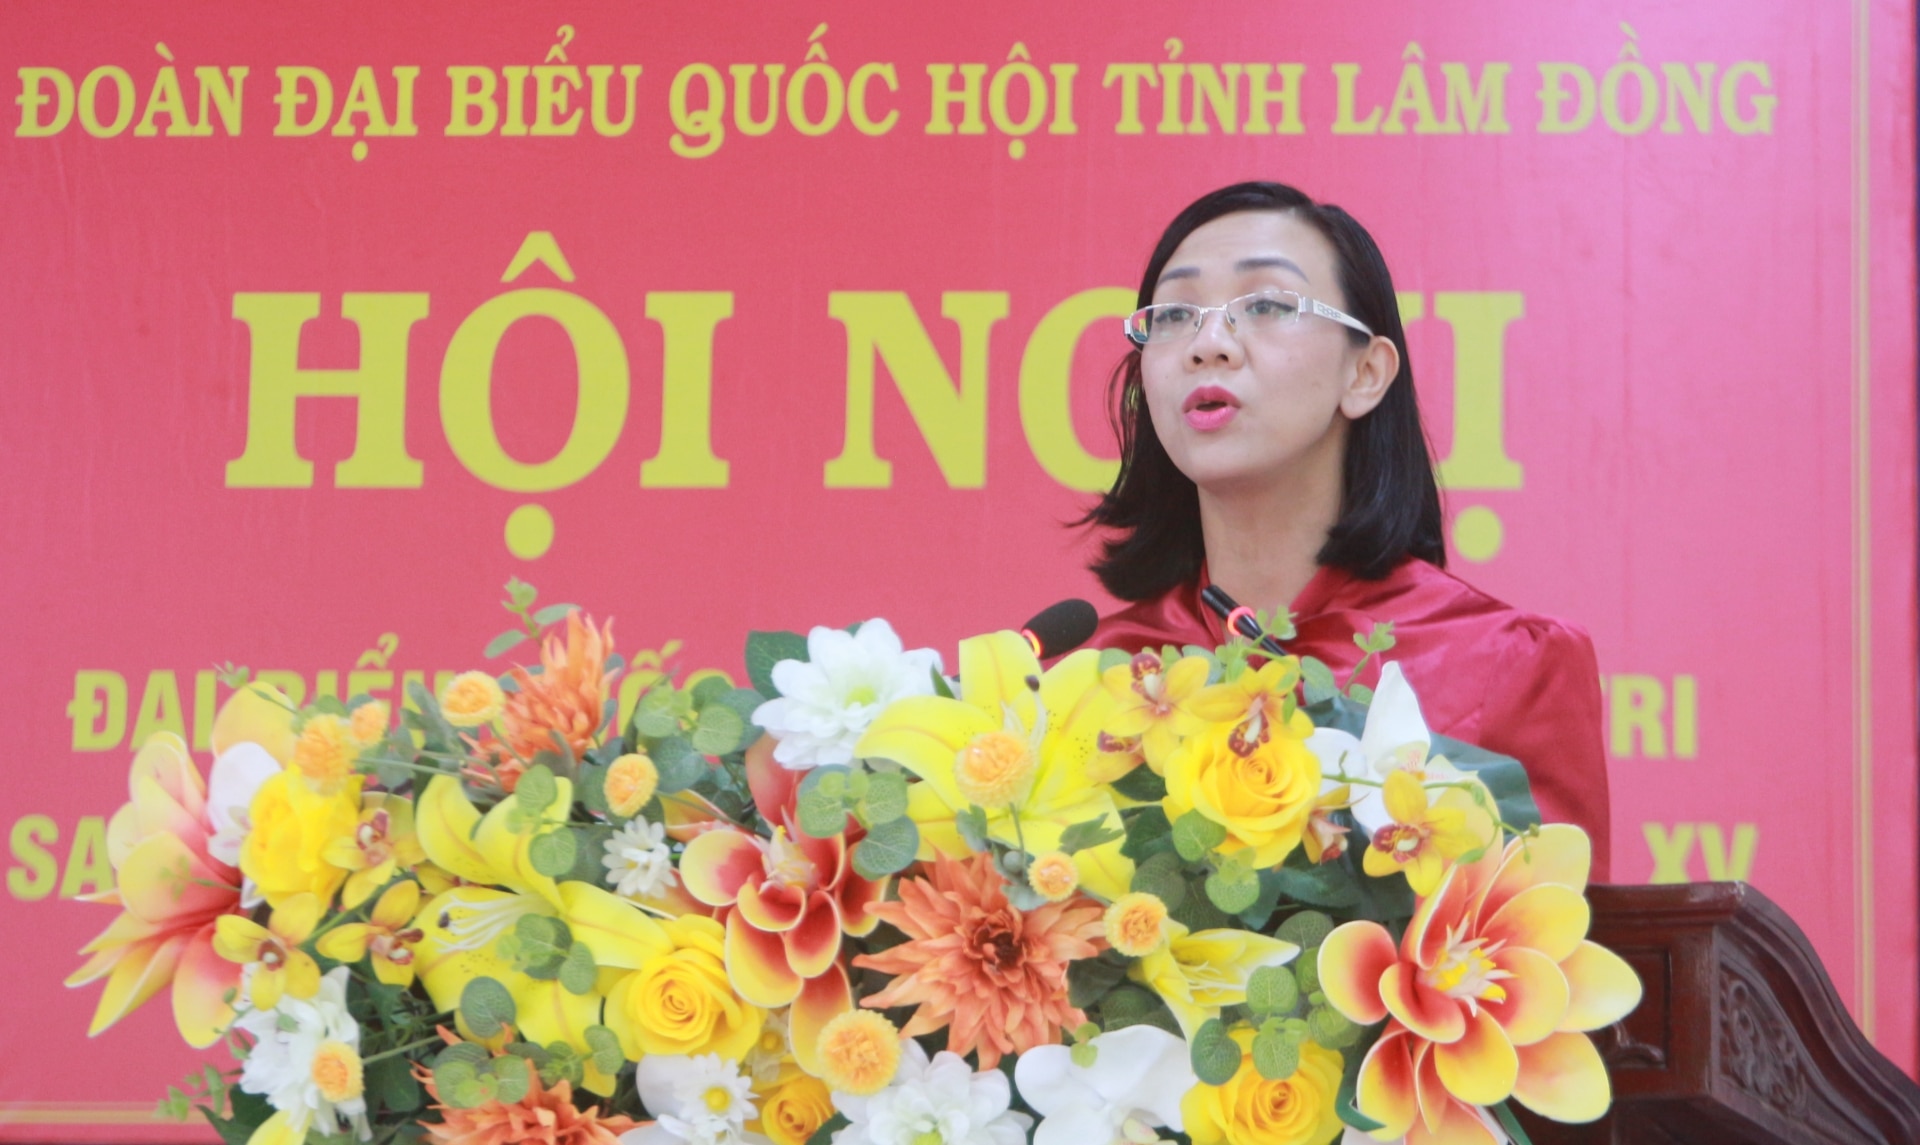 ĐBQH Trịnh Thị Tú Anh báo cáo kết quả Kỳ họp thứ 7, Quốc hội khoá XV đến cử tri